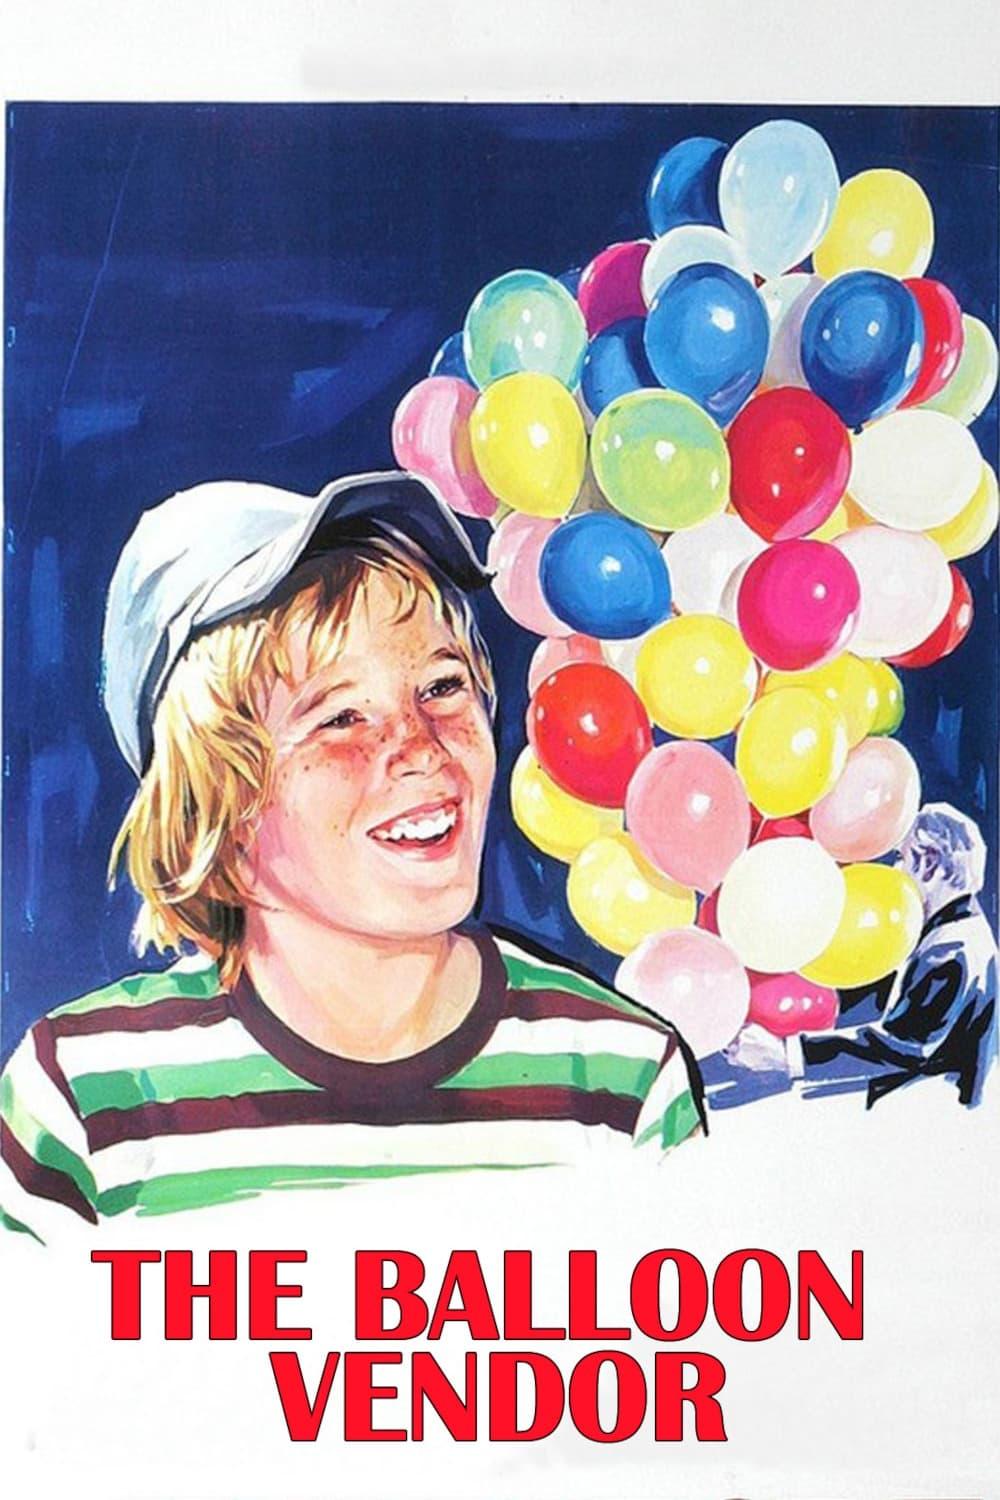 The Balloon Vendor poster